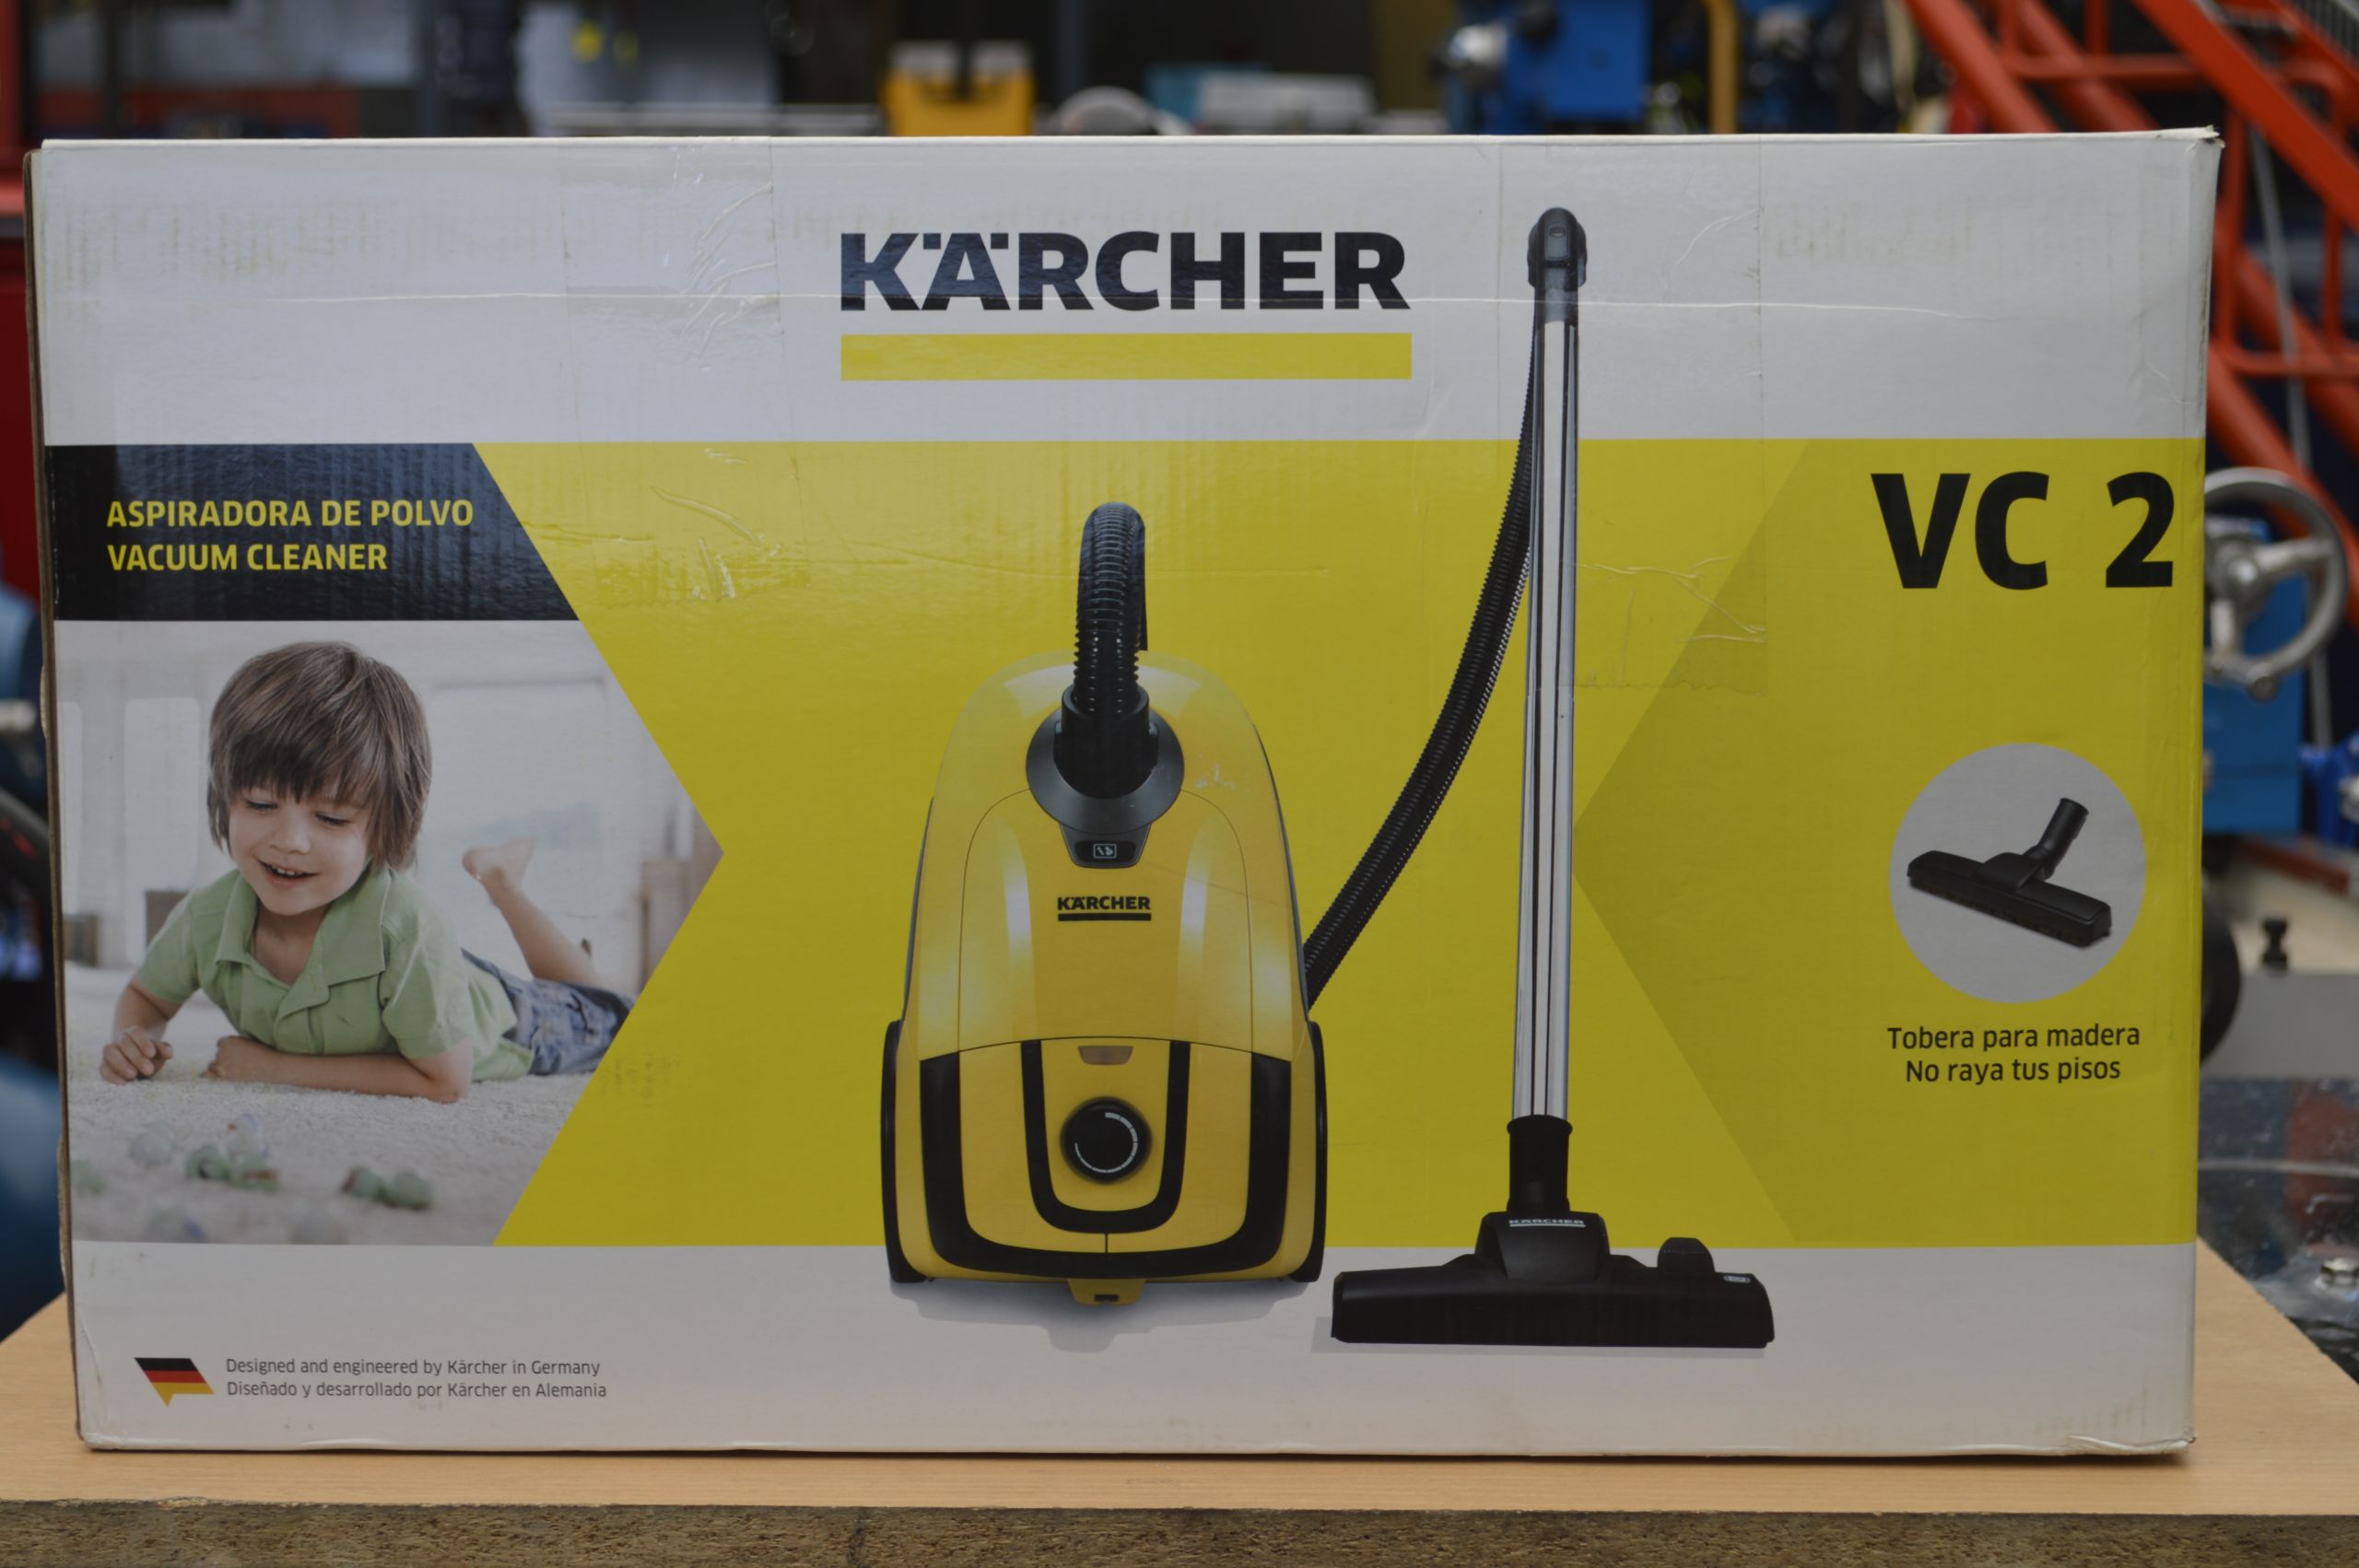 Kärcher - La VC2 además de contar con filtro HEPA, cuenta con un  compartimiento escondido para accesorios y cable retráctil. #aspiradora  #pisos #limpieza #economía #alergias